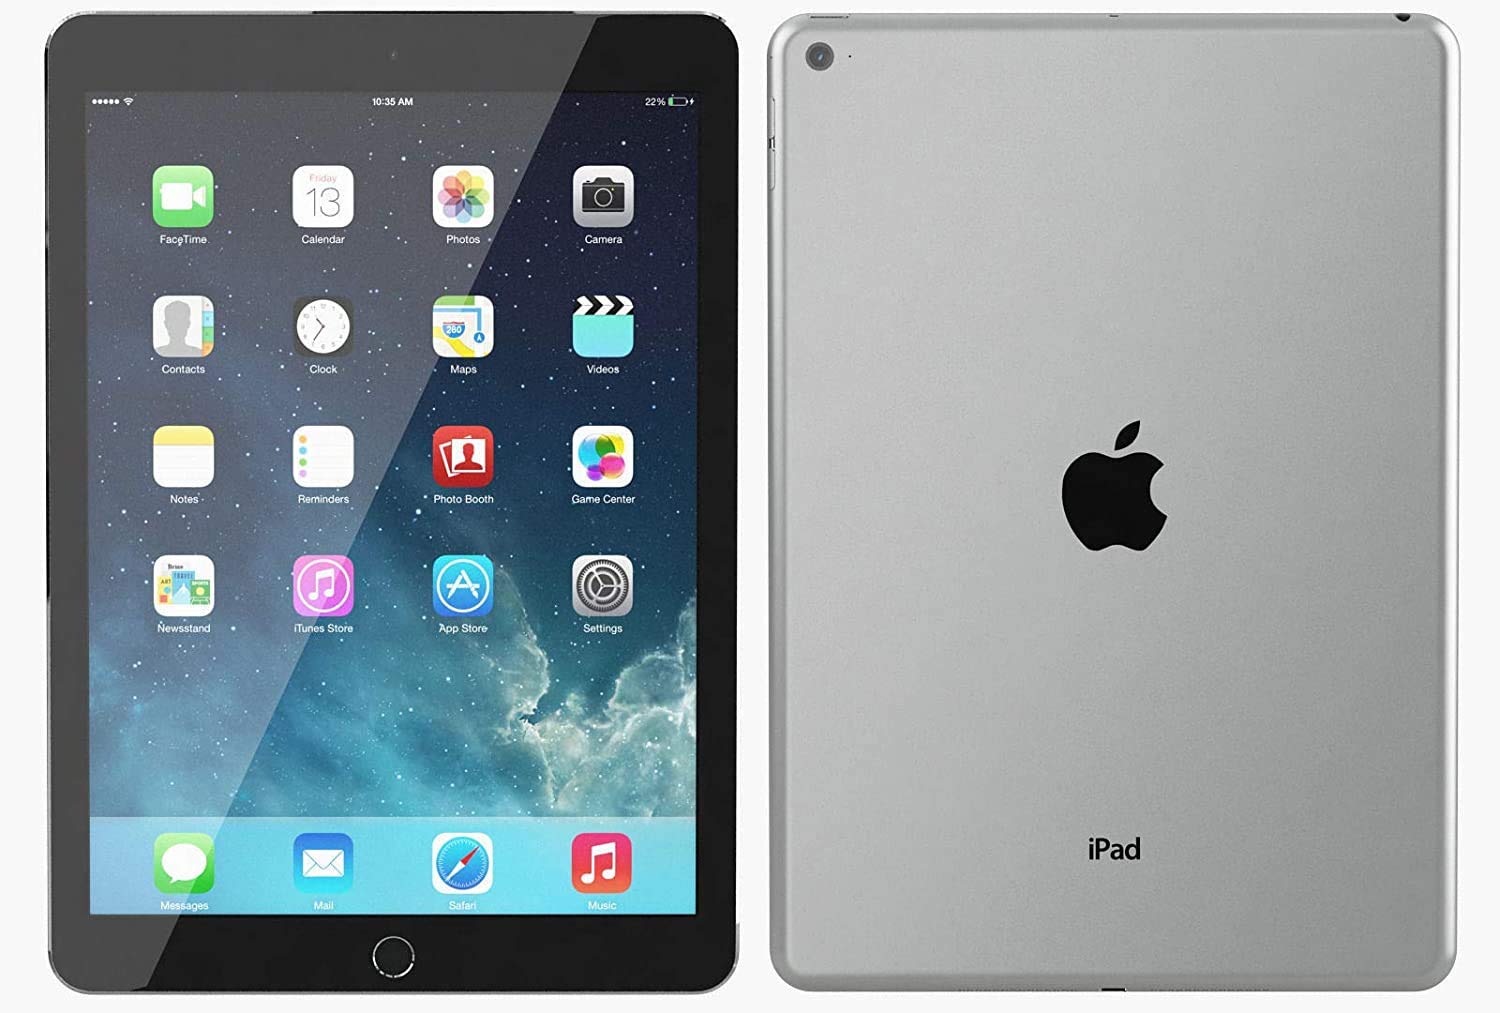 Apple iPad Air 2 16GB Wi-Fi - Space Grey (Renewed)